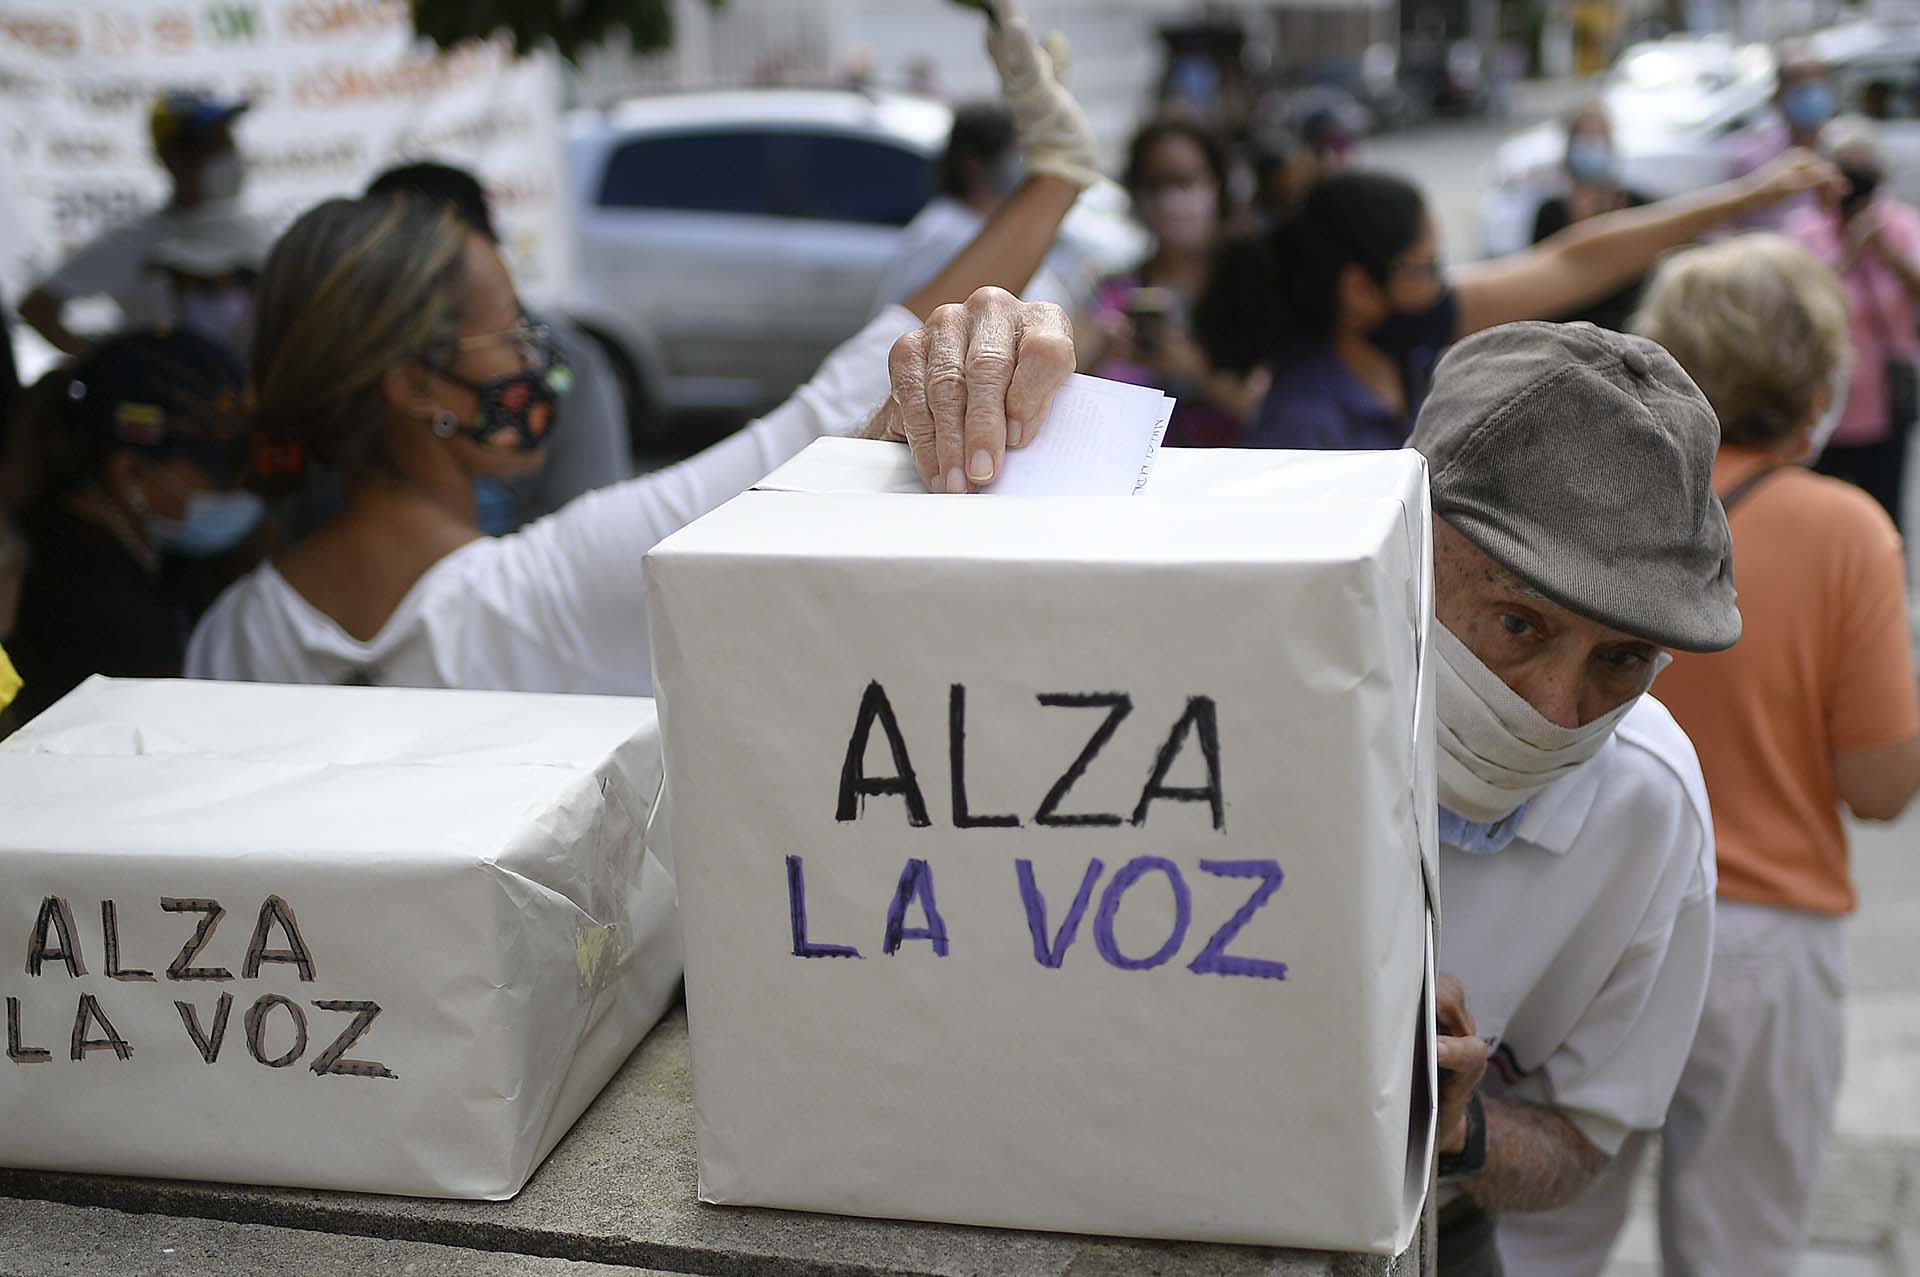 Una persona vota en Caracas en la consulta popular organizada por los partidos democráticos venezolanos en rechazo a la elección fraudulenta organizada por el régimen de Maduro (12 de diciembre) 